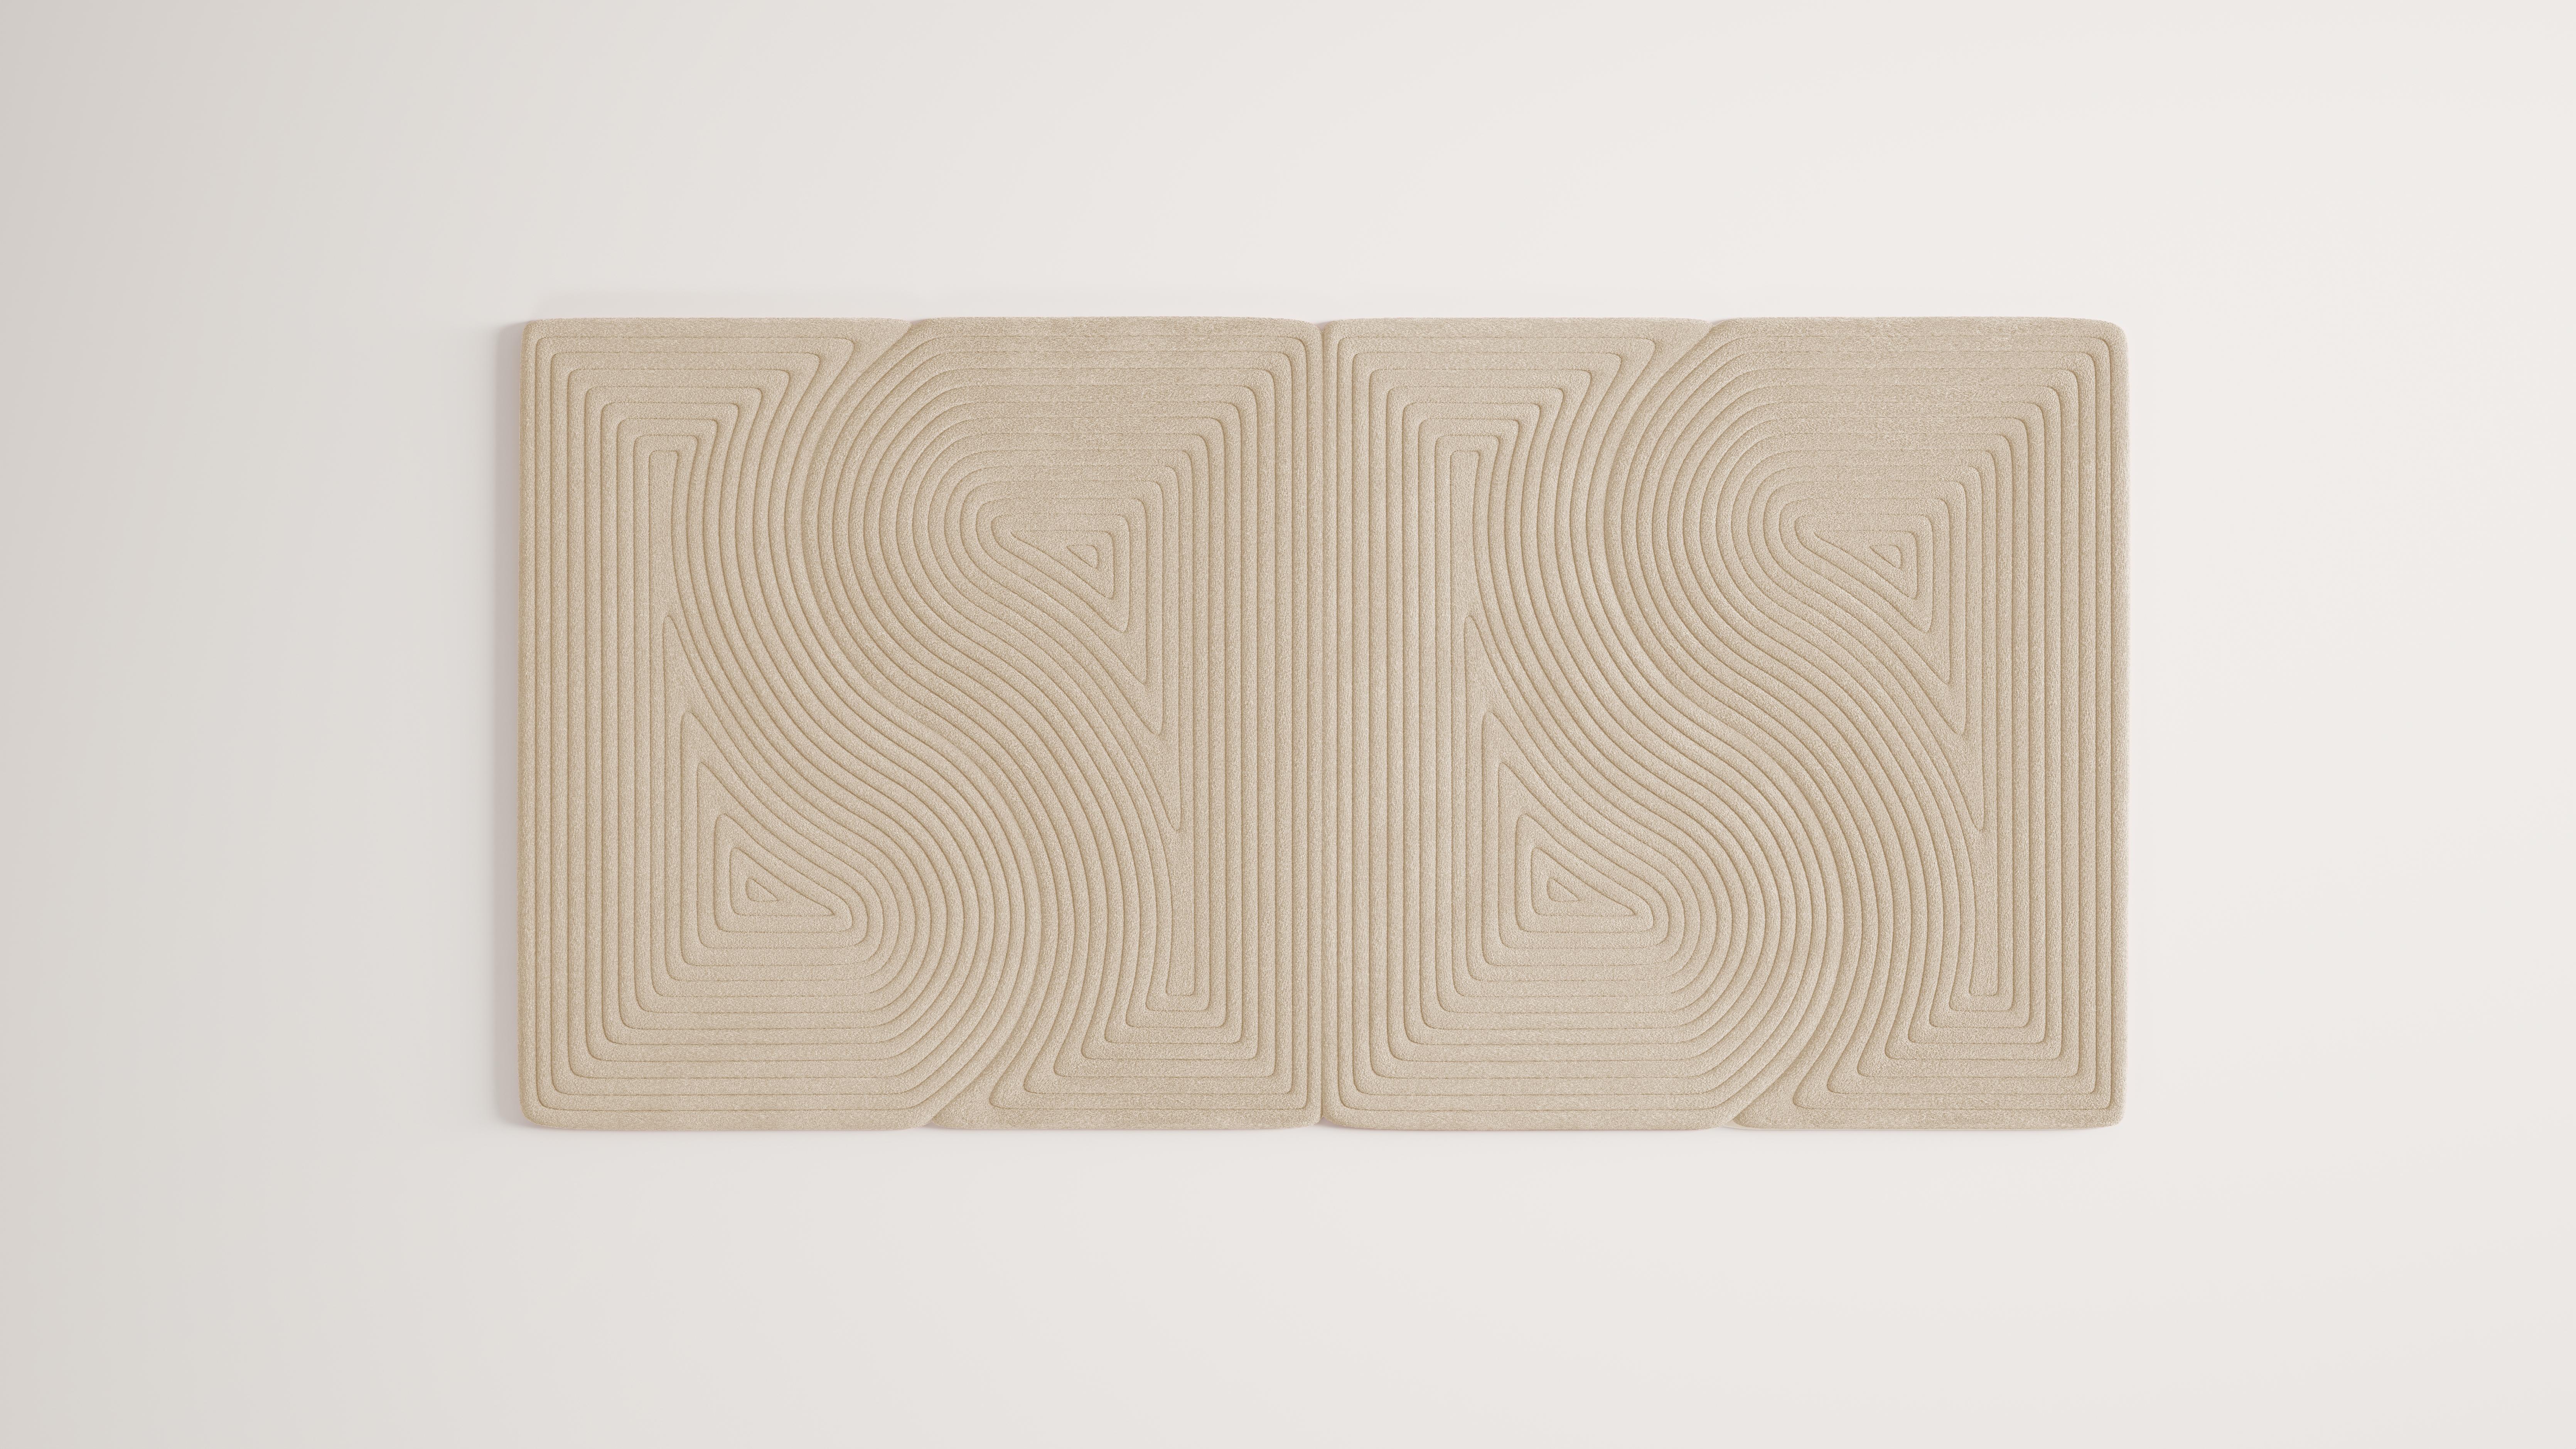 Niwa ist eine Kollektion von minimalistischen und organischen Modulteppichen. Jedes Modul kann auf endlose Weise mit anderen kombiniert werden, um anpassbare Konfigurationen zu erstellen. 

Diese Collection ist eine Darstellung des Sandelements in